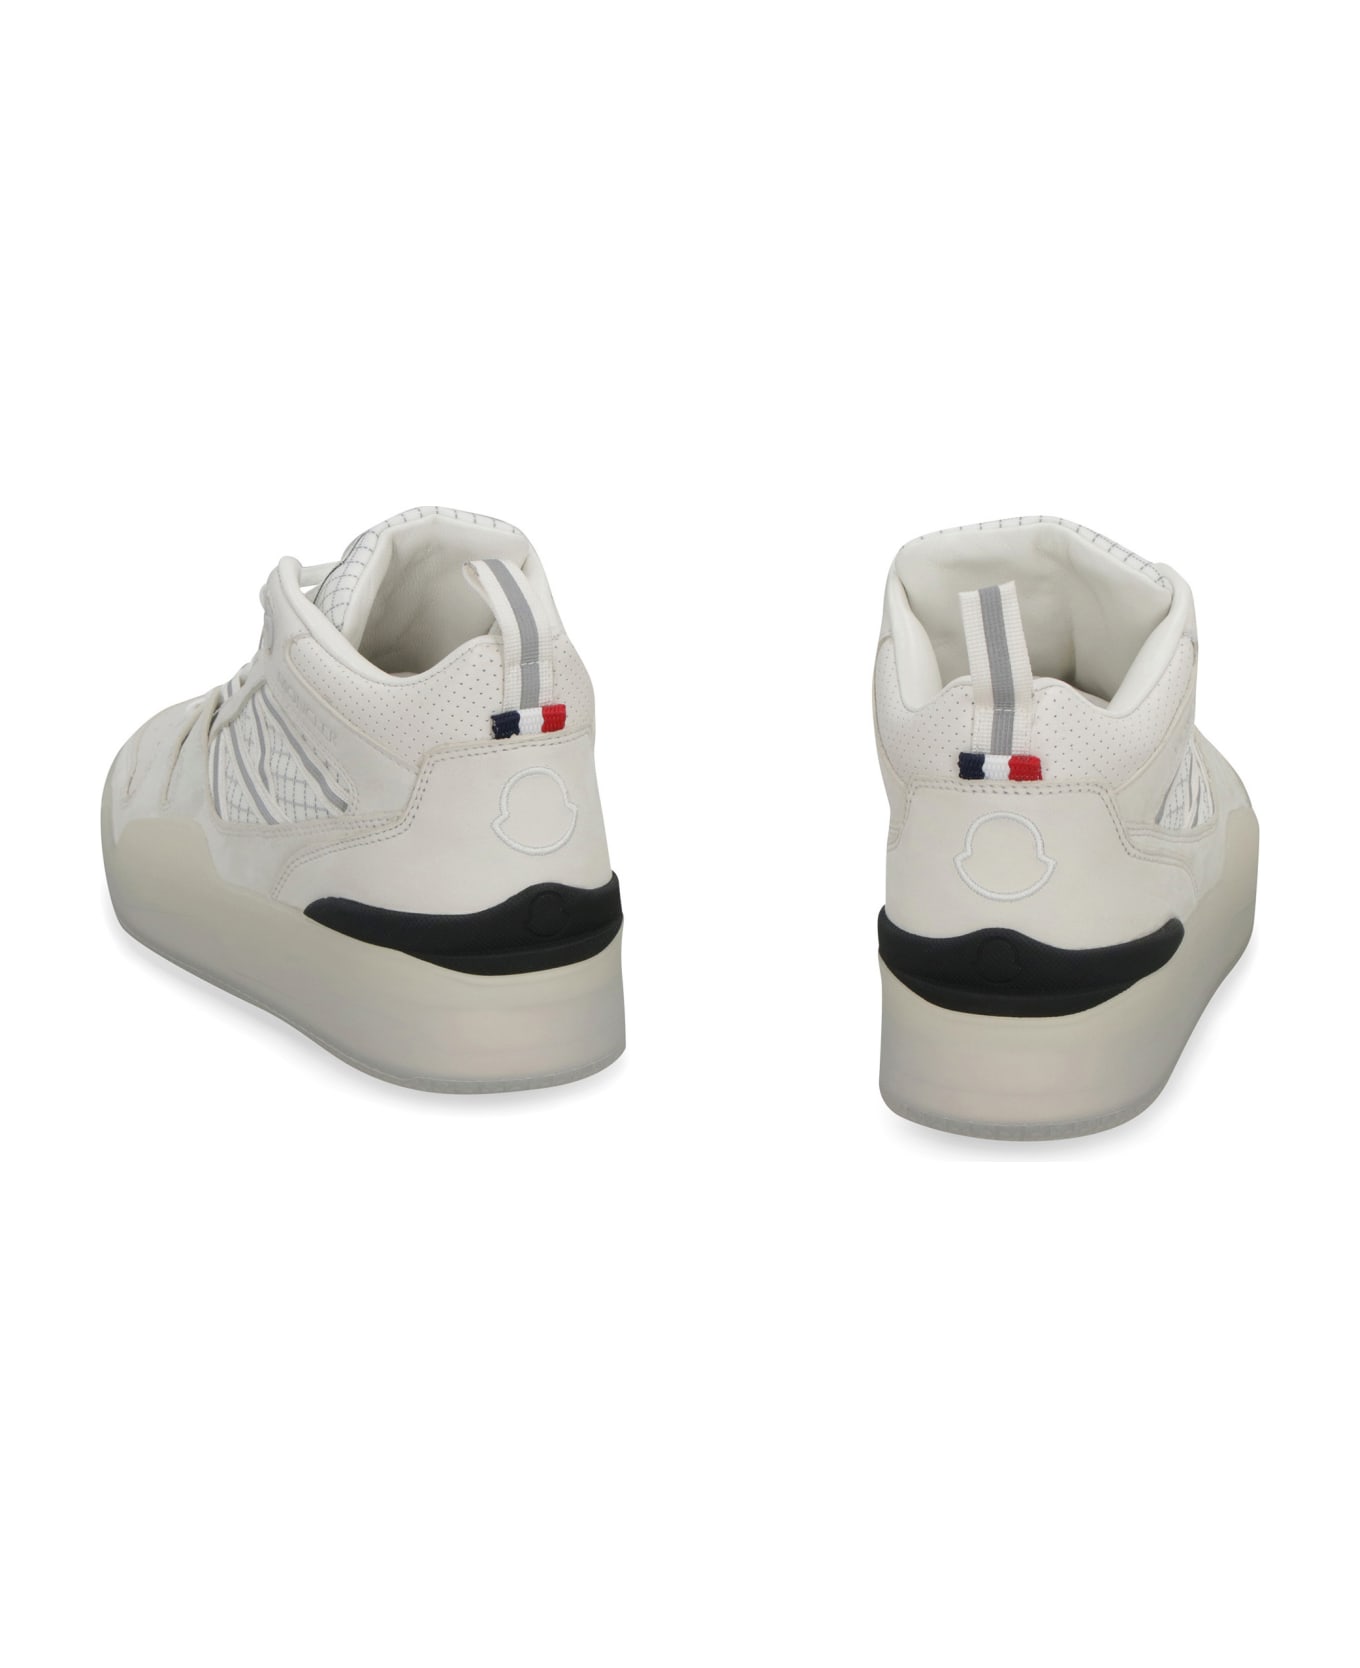 Moncler Pivot High-top Sneakers - White